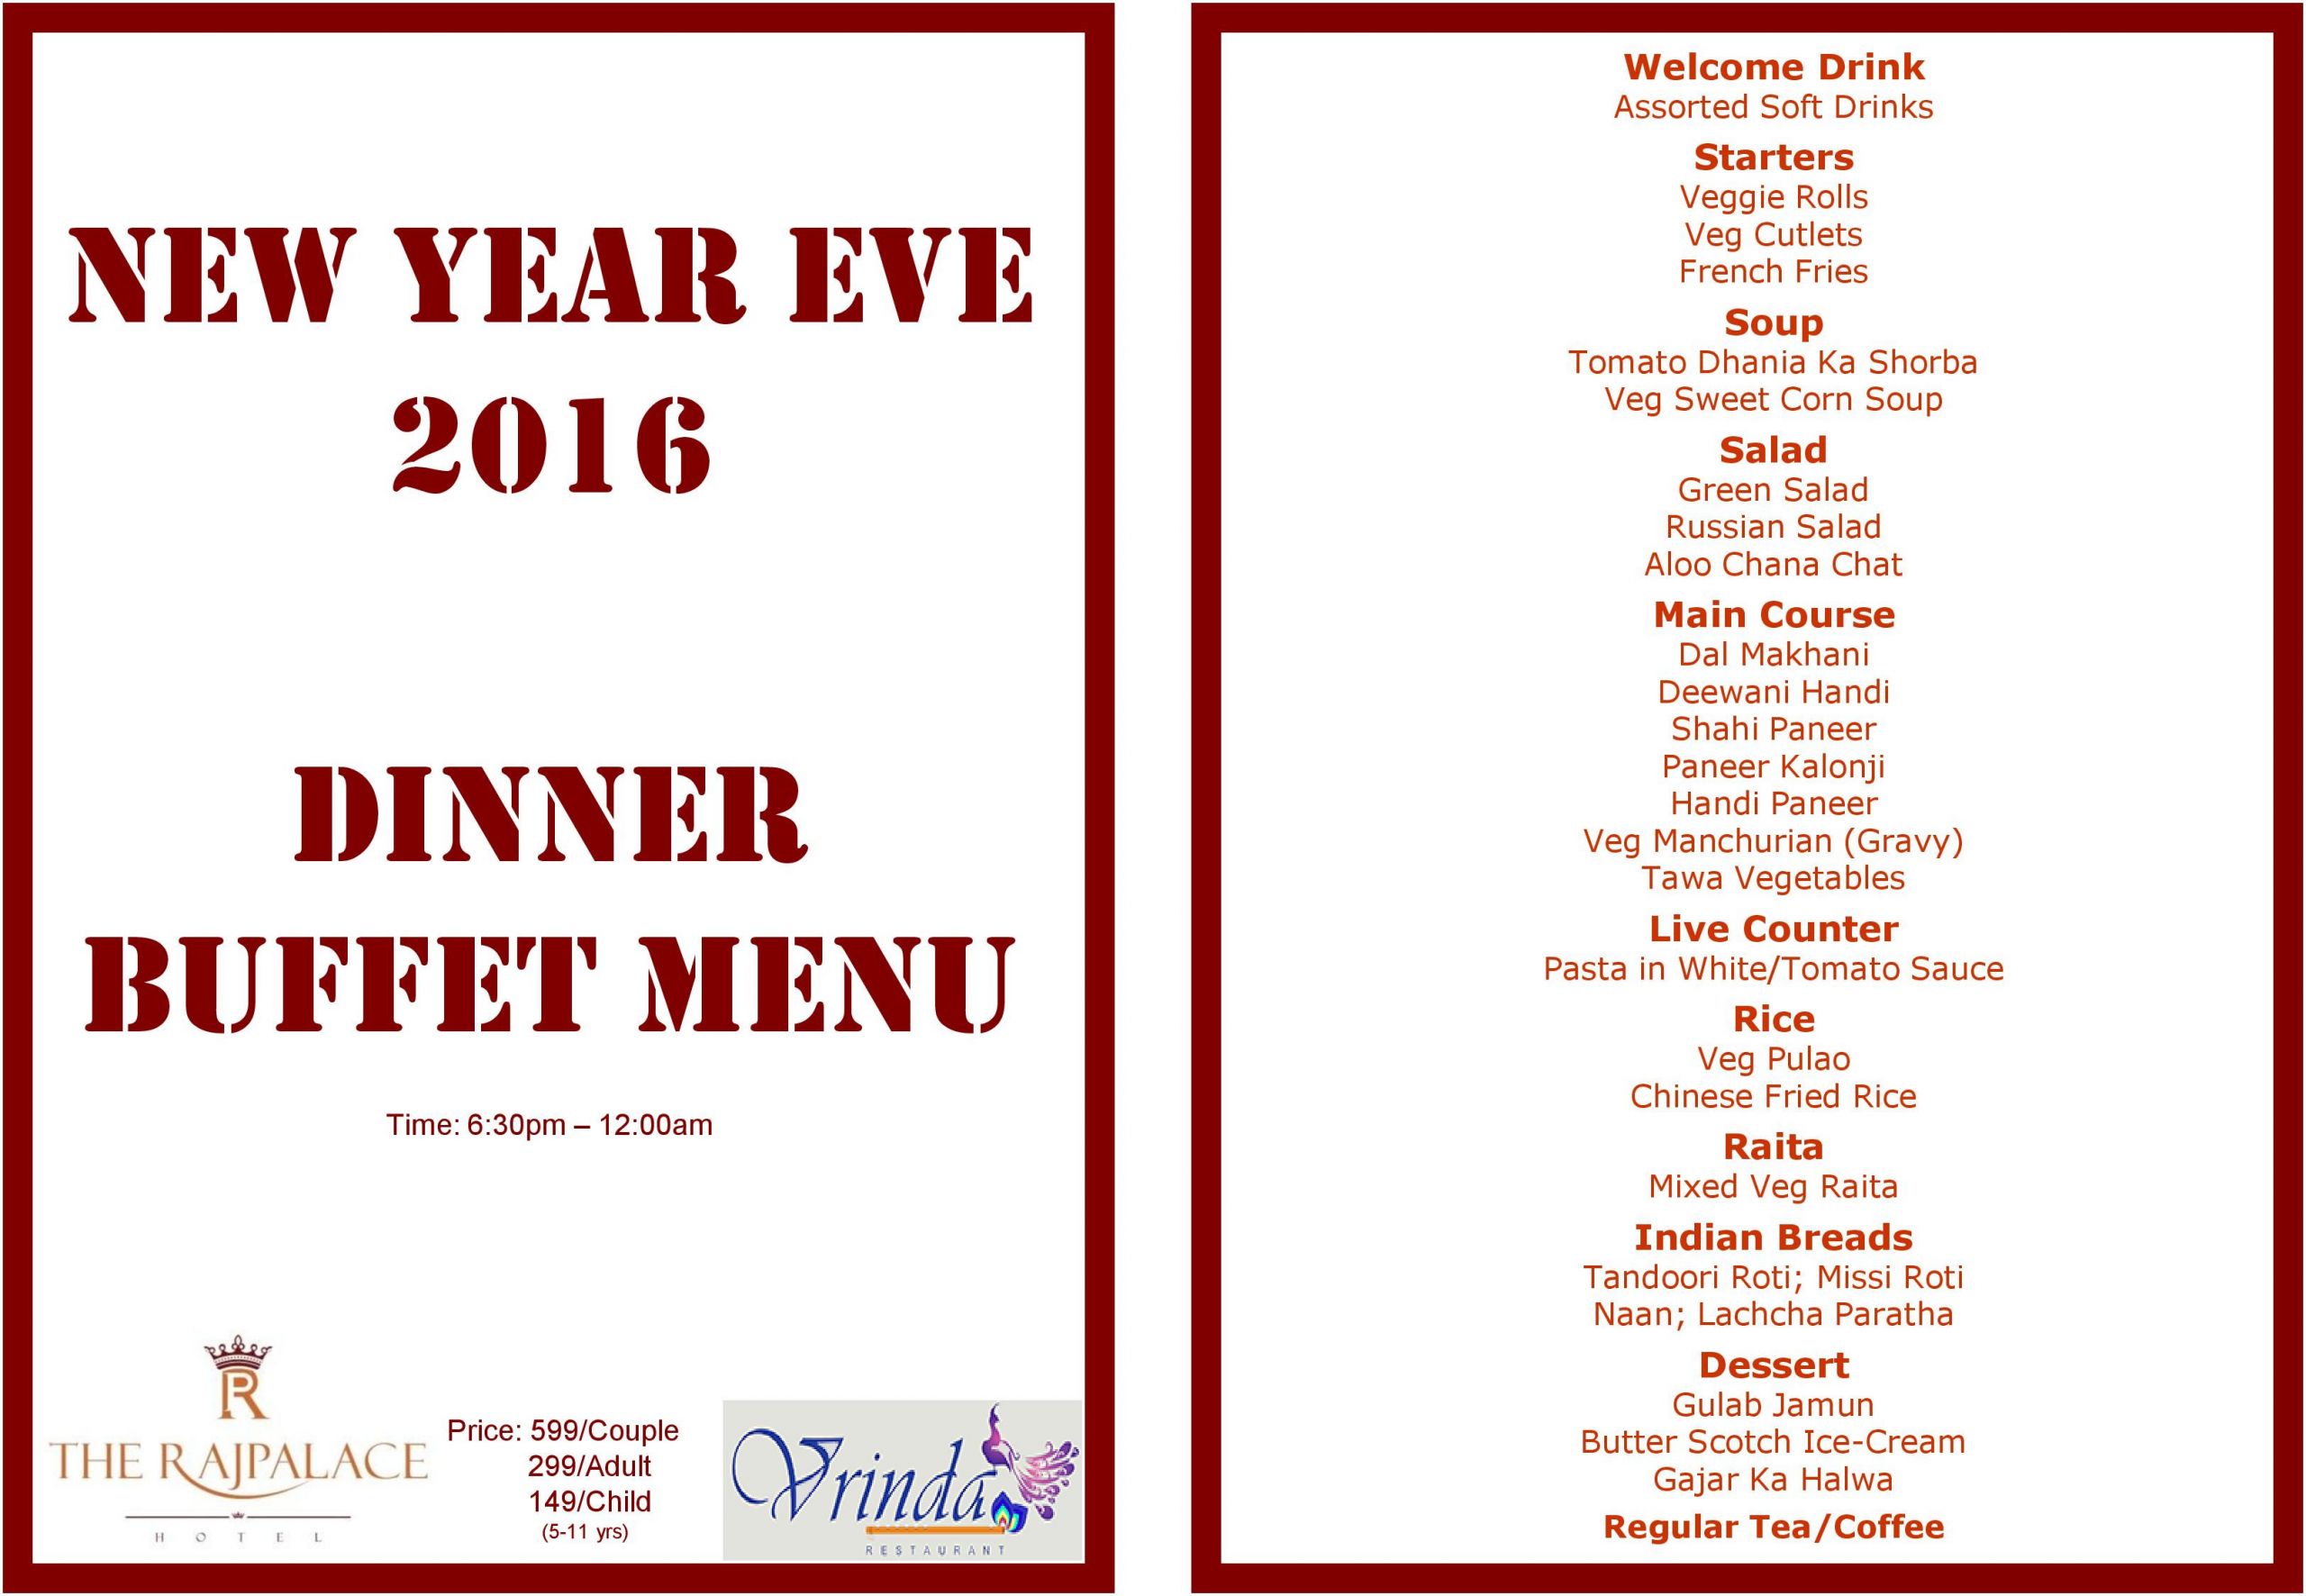 New Year Dinner Menu
 NEW YEAR EVE 2016 DINNER BUFFET MENU – Our fer